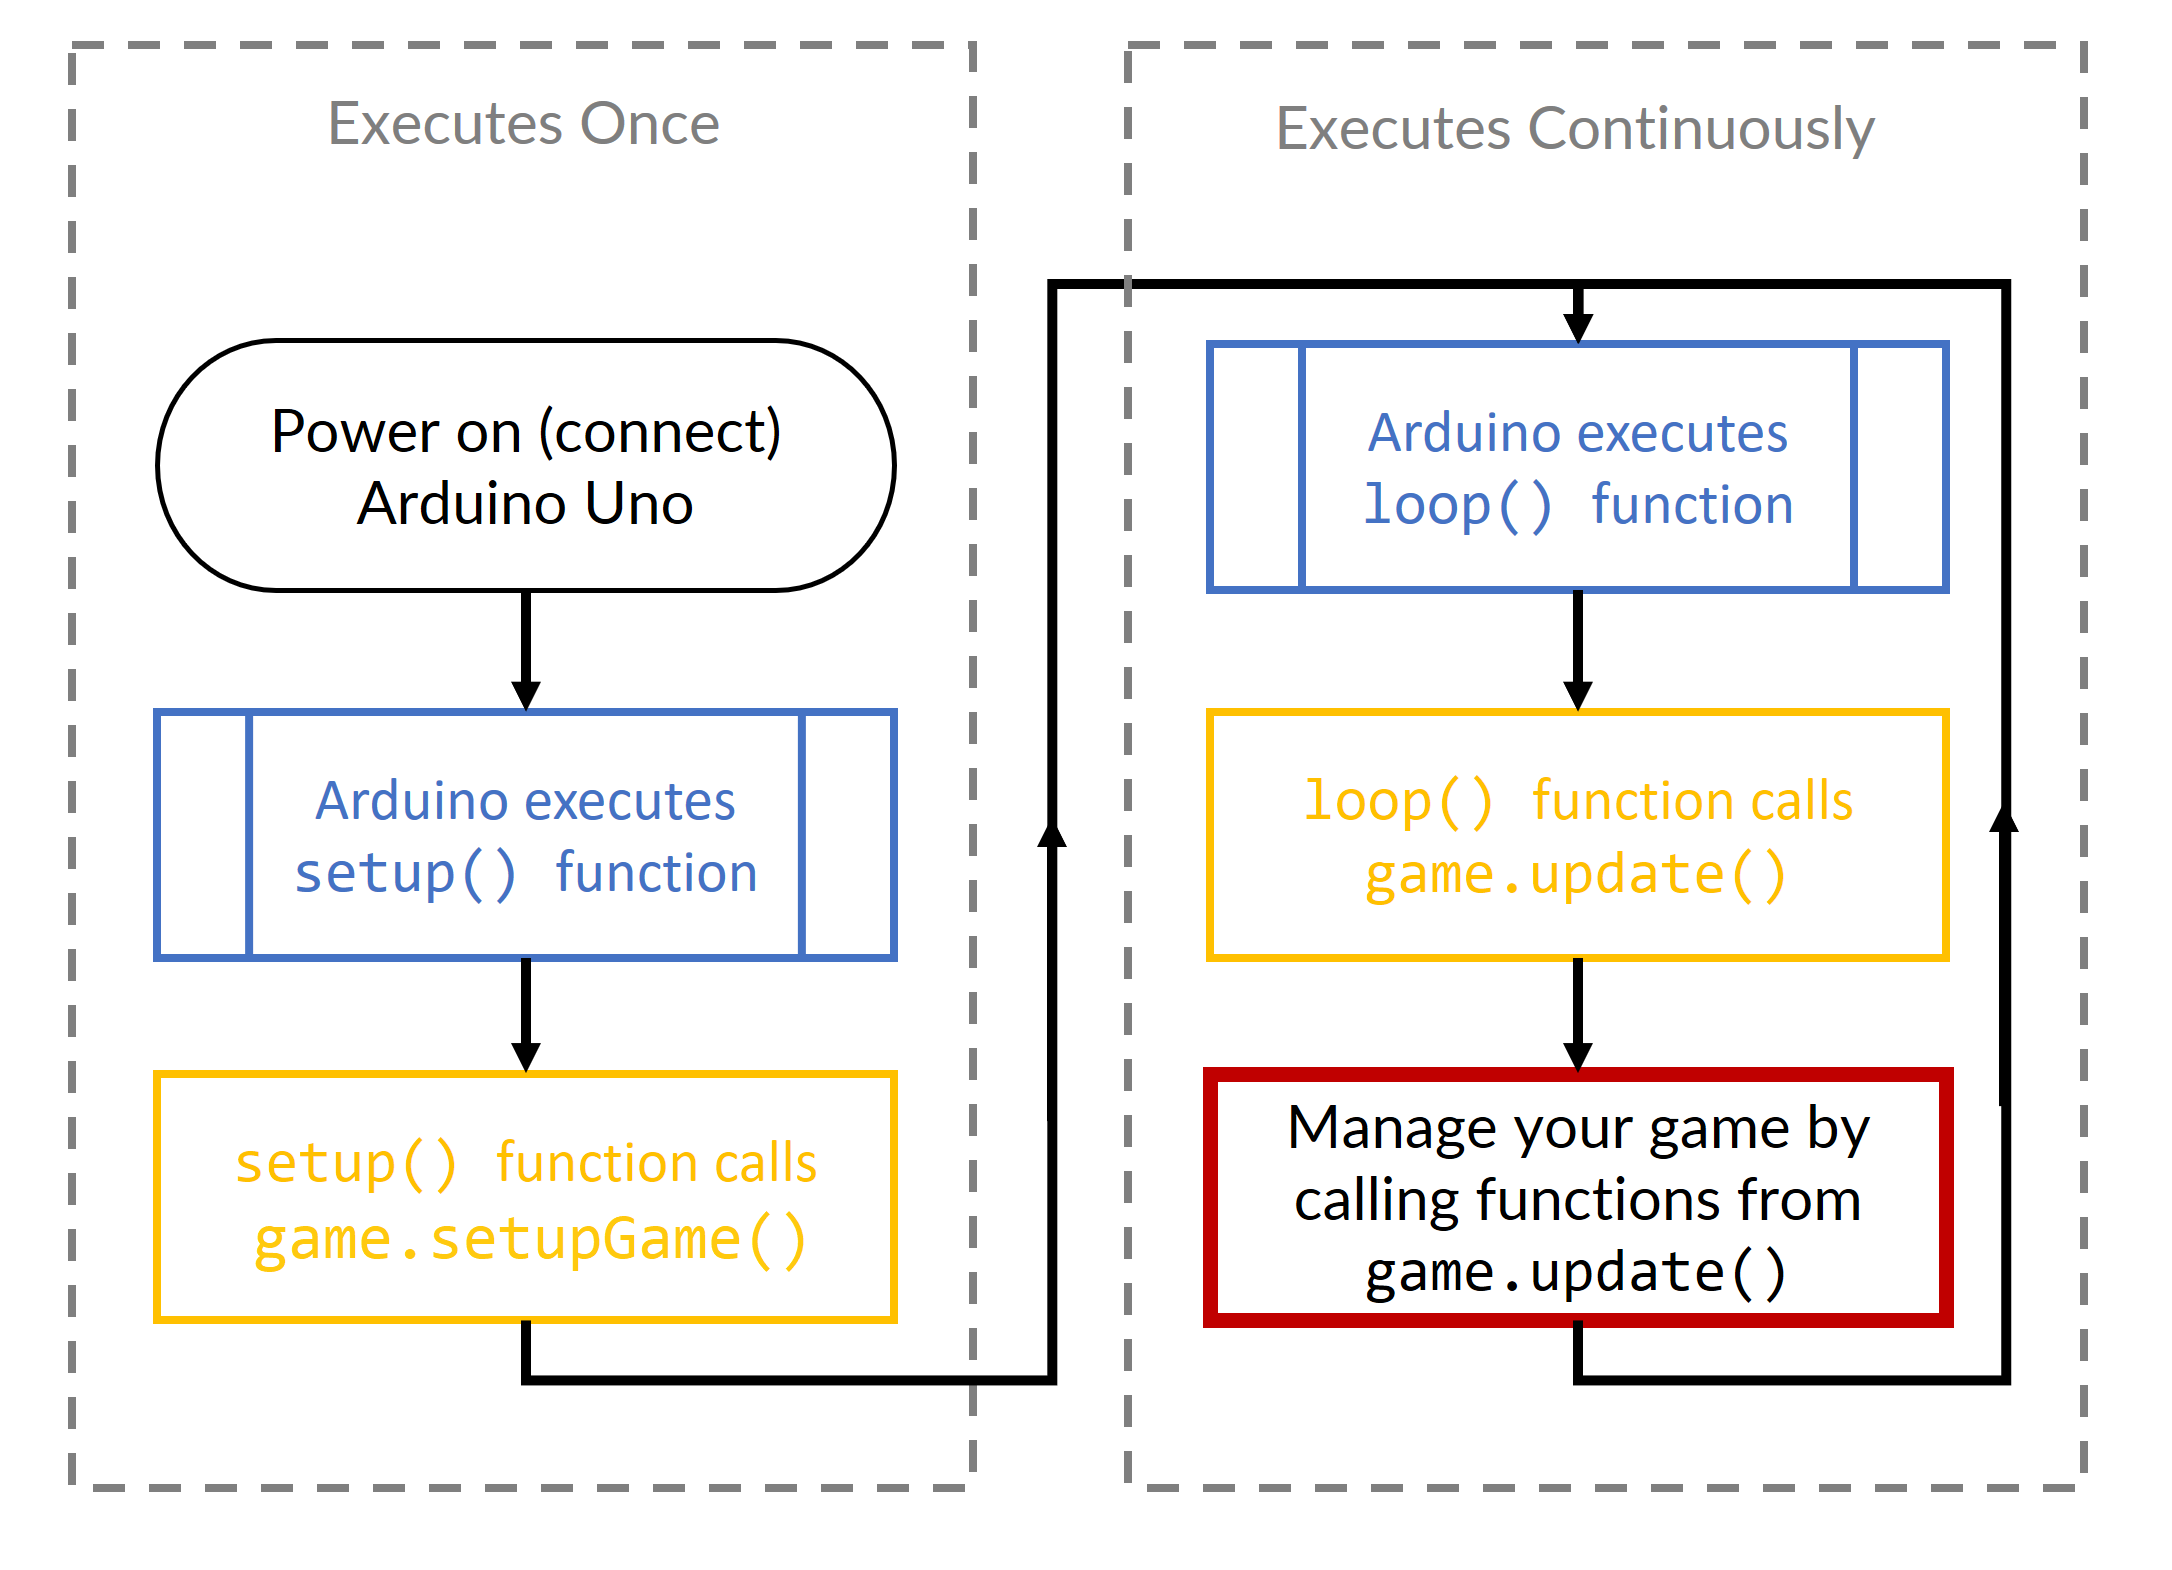 How the Arduino Uno executes sketches (programs)